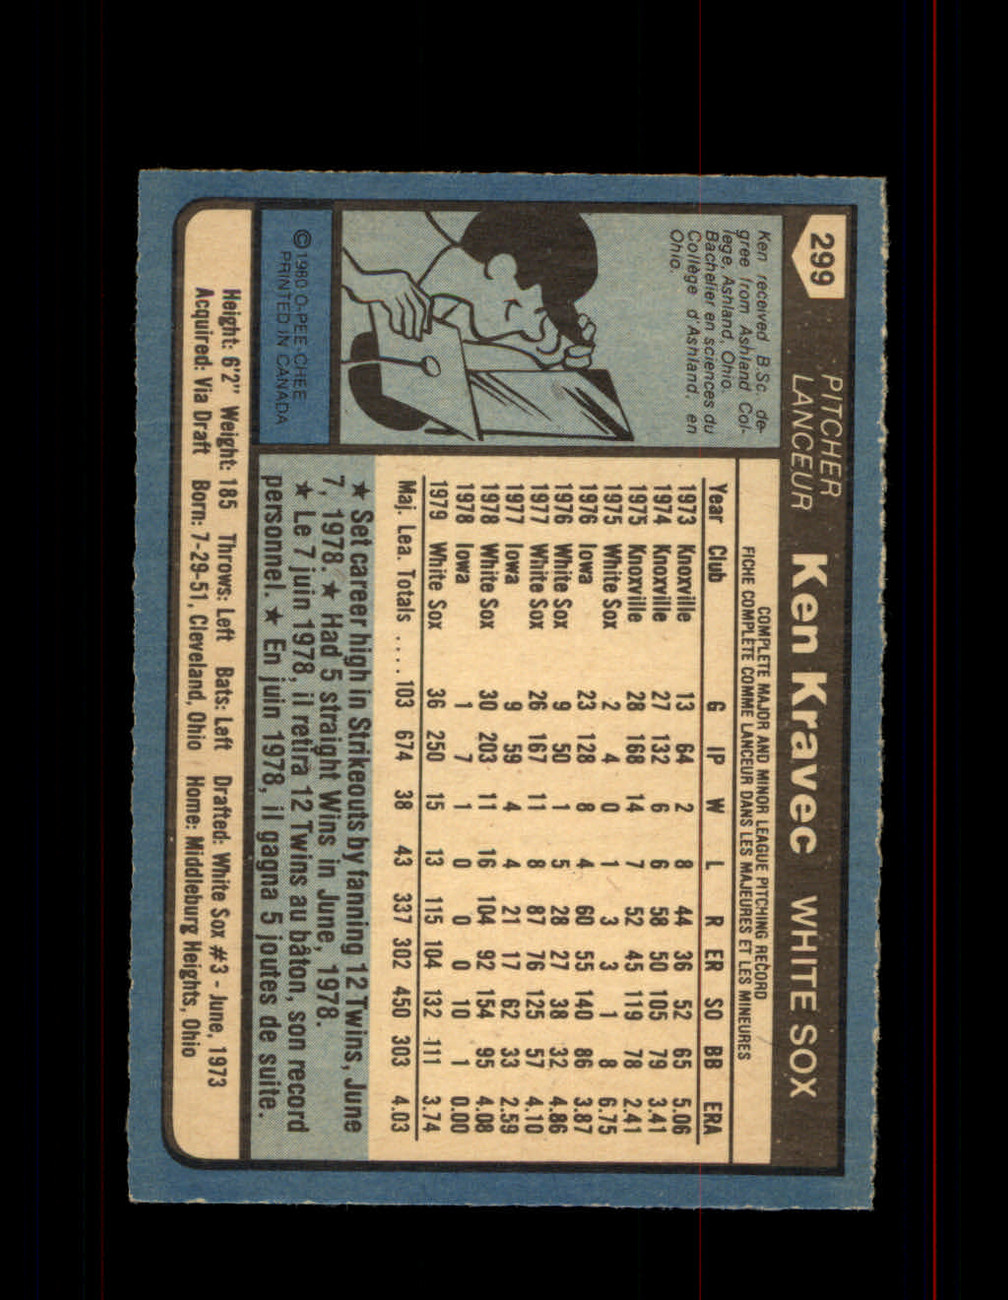 1979 KEN KRAVEC OPC #141 WHITE SOX O PEE CHEE #5052 - OPC Baseball.com